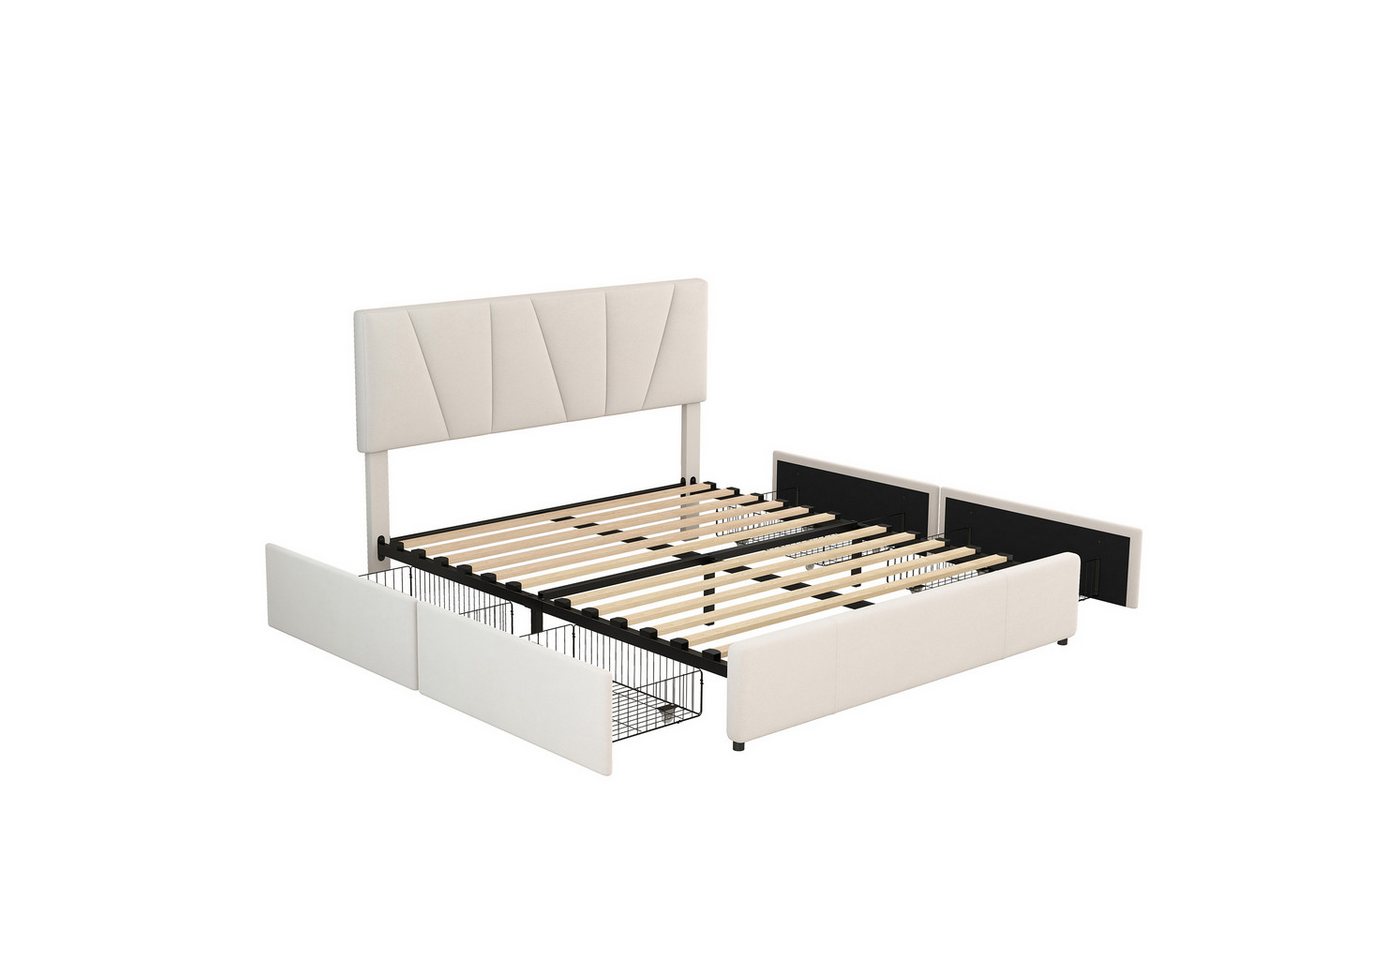 DOPWii Bett Double Size Polster Plattform Bett mit vier Schubladen auf zwei Seiten, Polsterbett,Stauraumbett,Verstellbares Kopfteil,Beige(140*200cm) von DOPWii